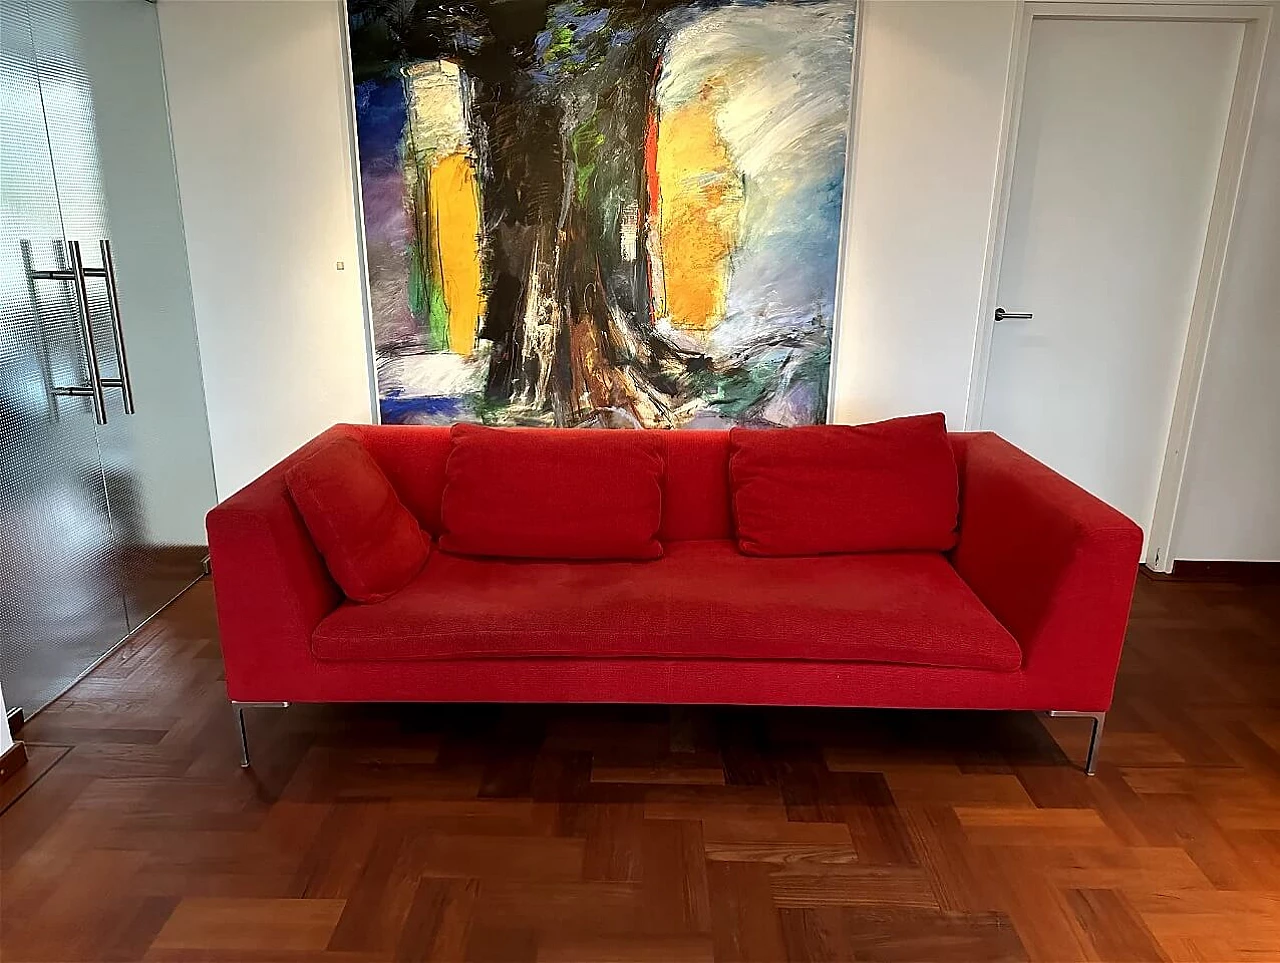 CH228 Charles sofa in red Maxalto-Cat cotton by Antonio Citterio for B&B Italia 1